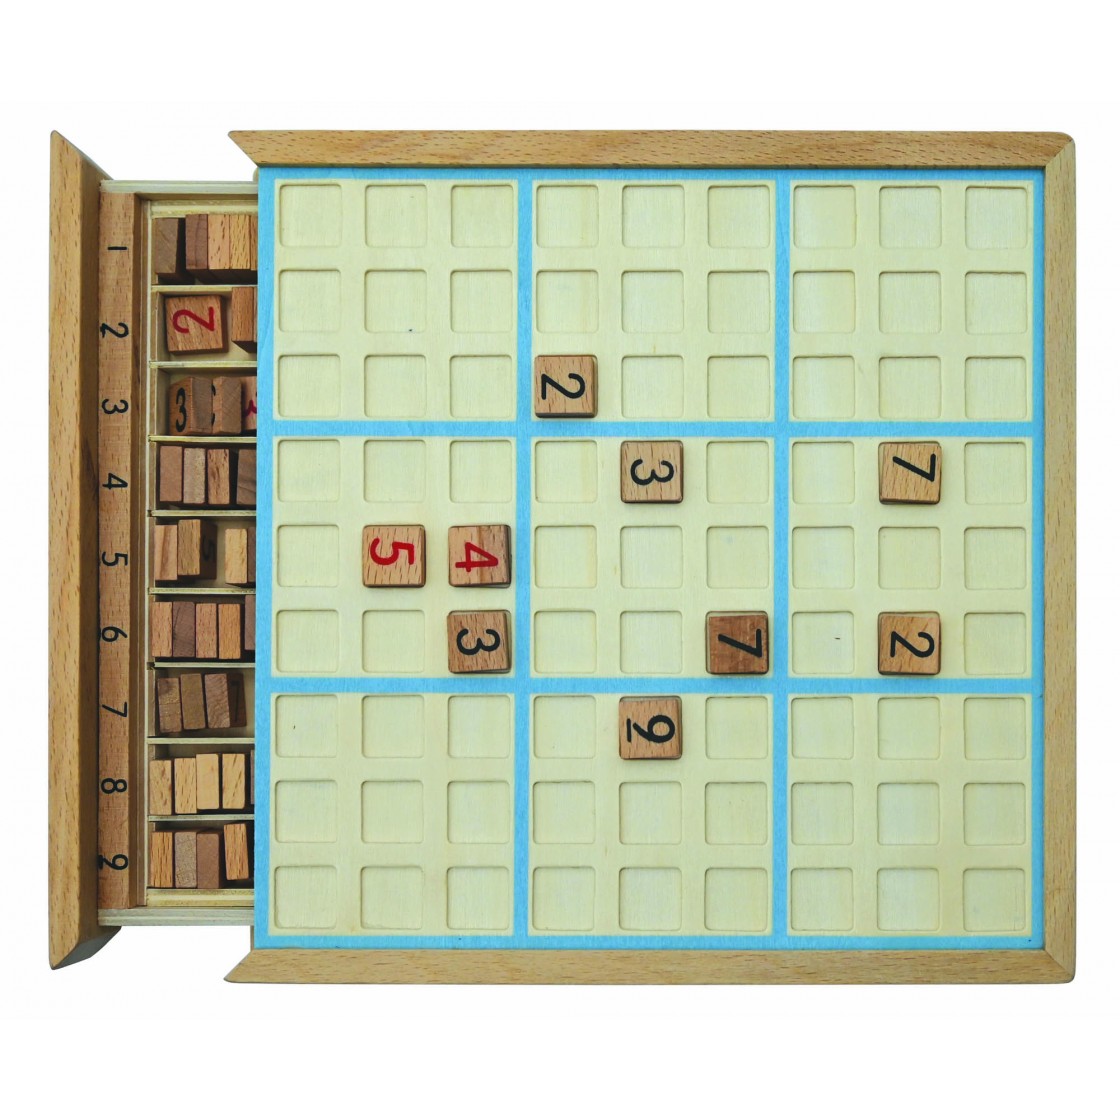 Generic jouet sudoku multifunction en bois- RWT-246 à prix pas